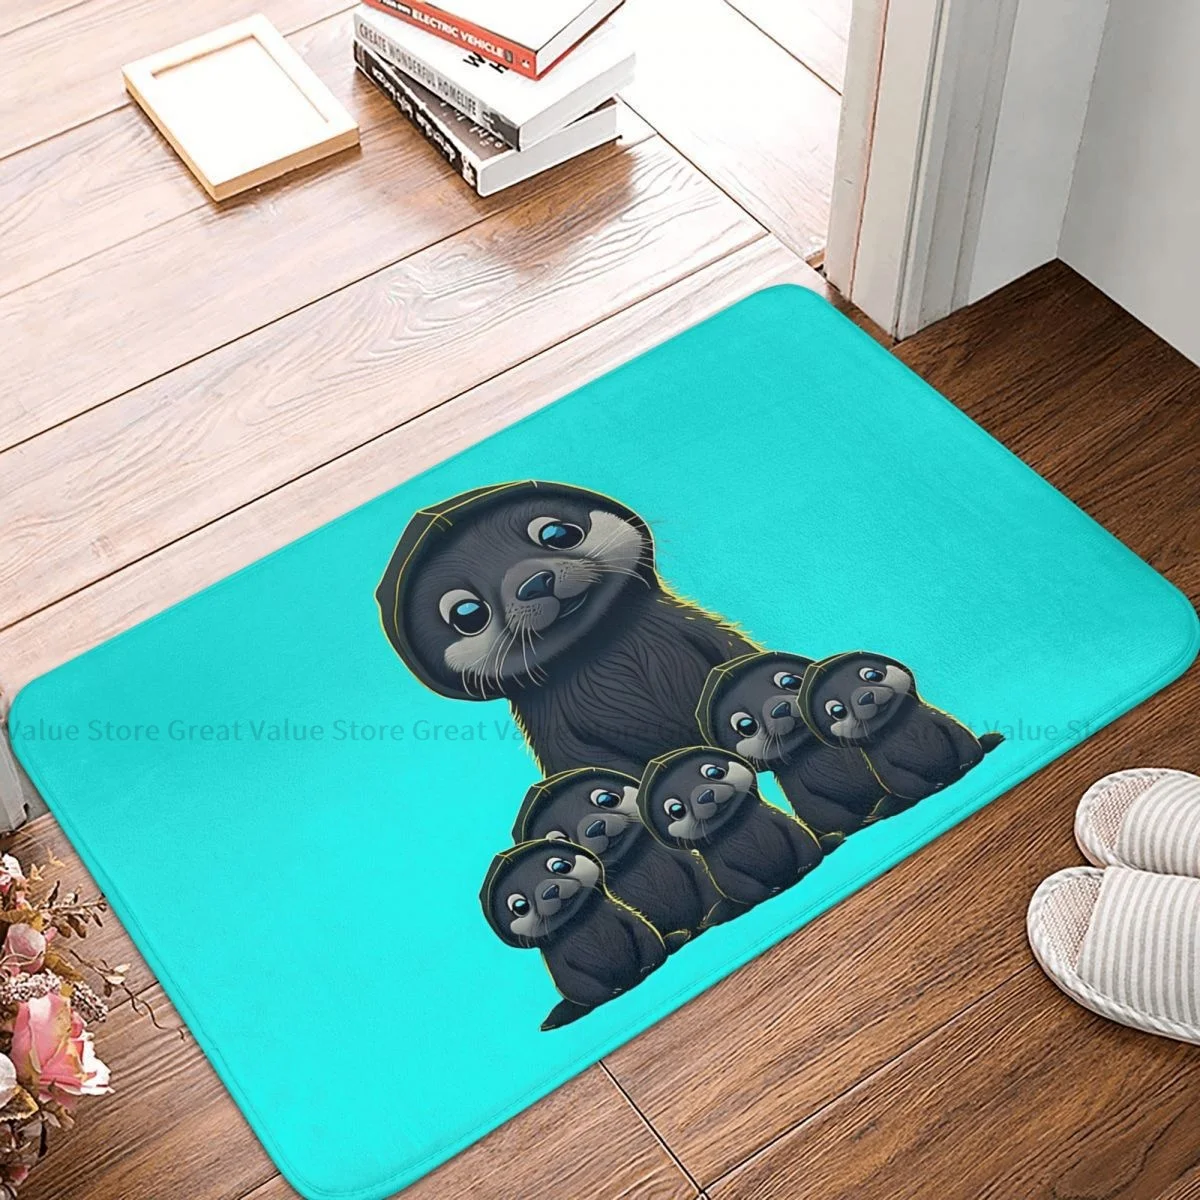 

Otters Animal Kitchen Non-Slip Carpet Cute Babies Wearing Hood Living Room Mat Welcome Doormat Floor Decor Rug